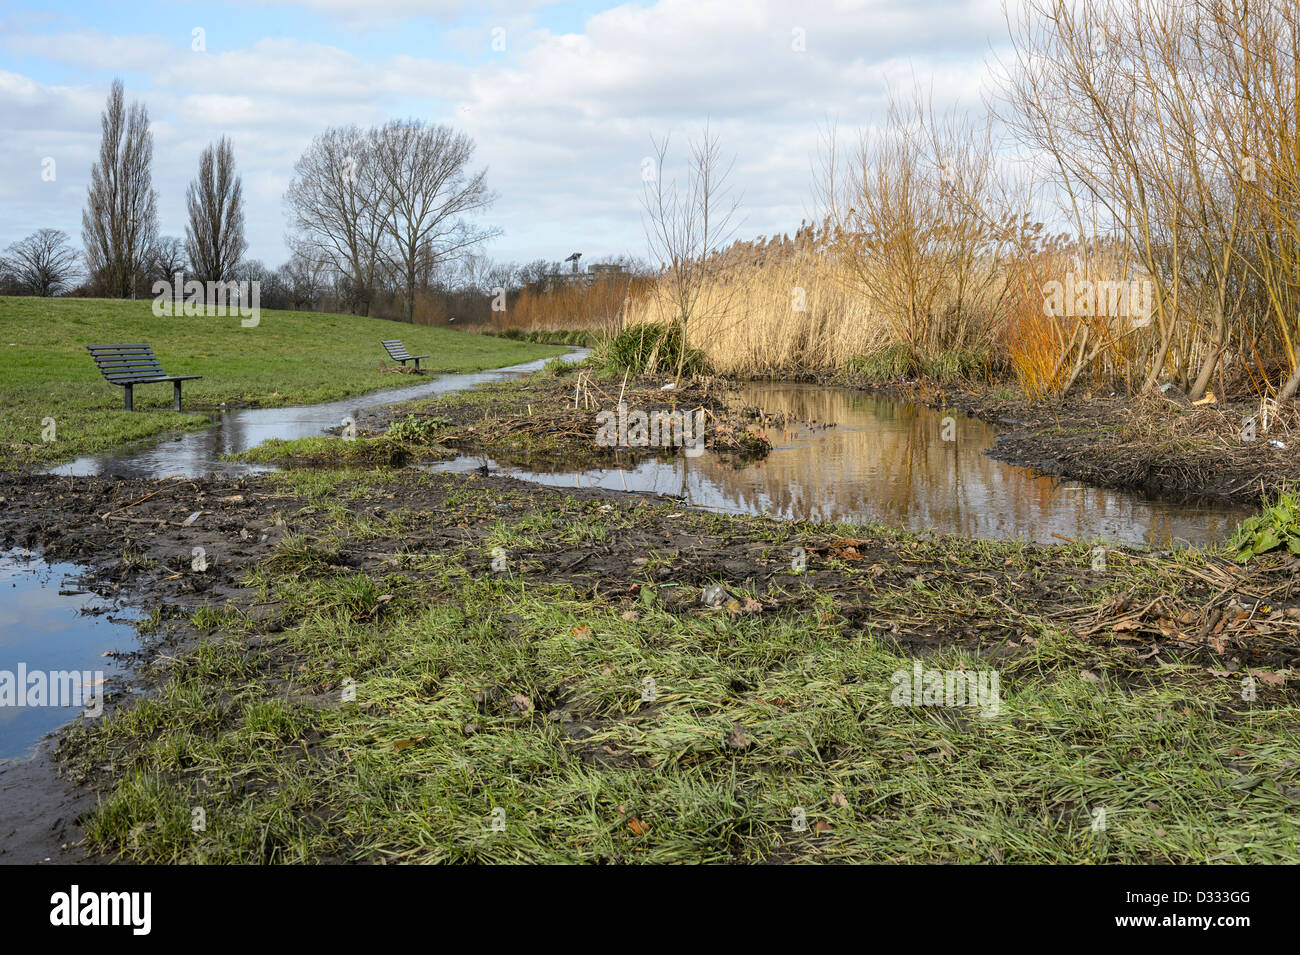 Verletzung aufgrund von Vegetationswachstum chocked Kanal Kanal. Fluß Quaggy Flut Linderung Schema, Sutcliffe Park, London, UK. Stockfoto